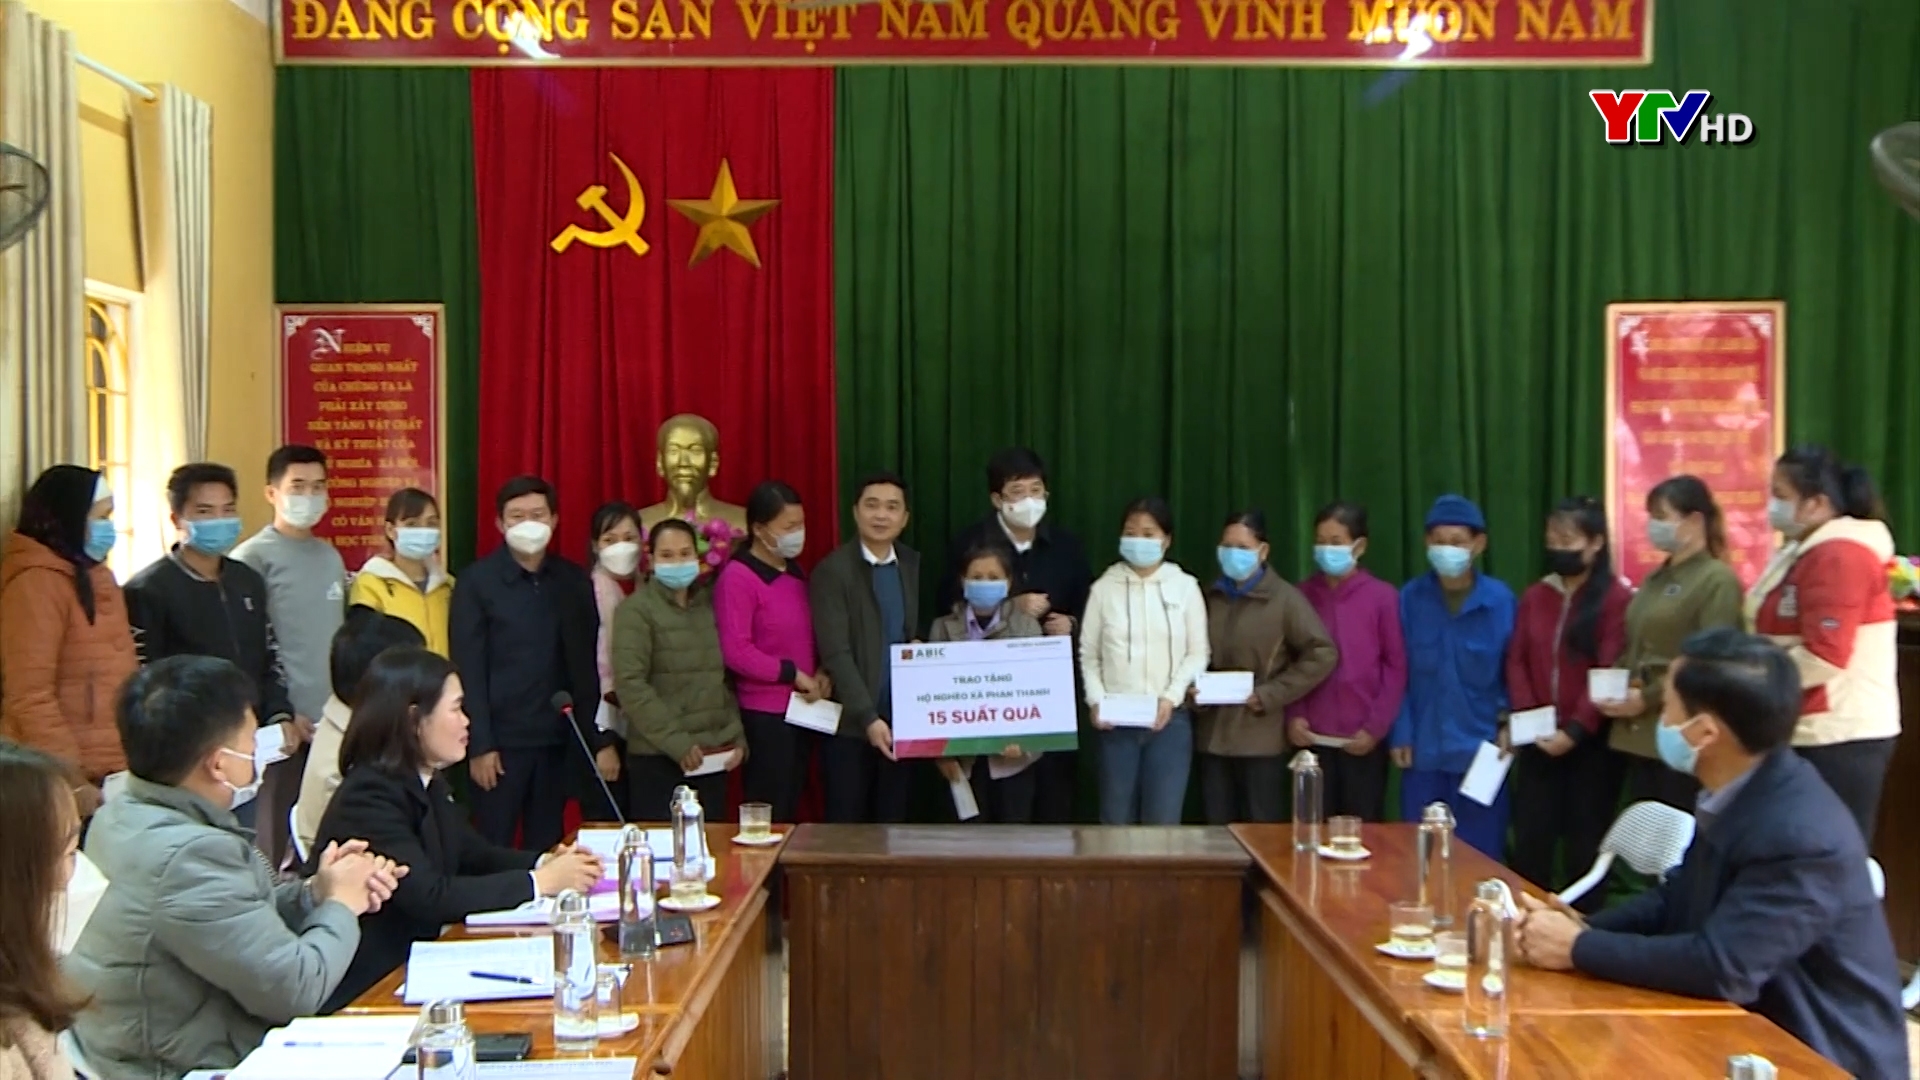 Đoàn đại biểu Quốc hội tỉnh Yên Bái tham gia “Ngày cùng dân” tại huyện Lục Yên